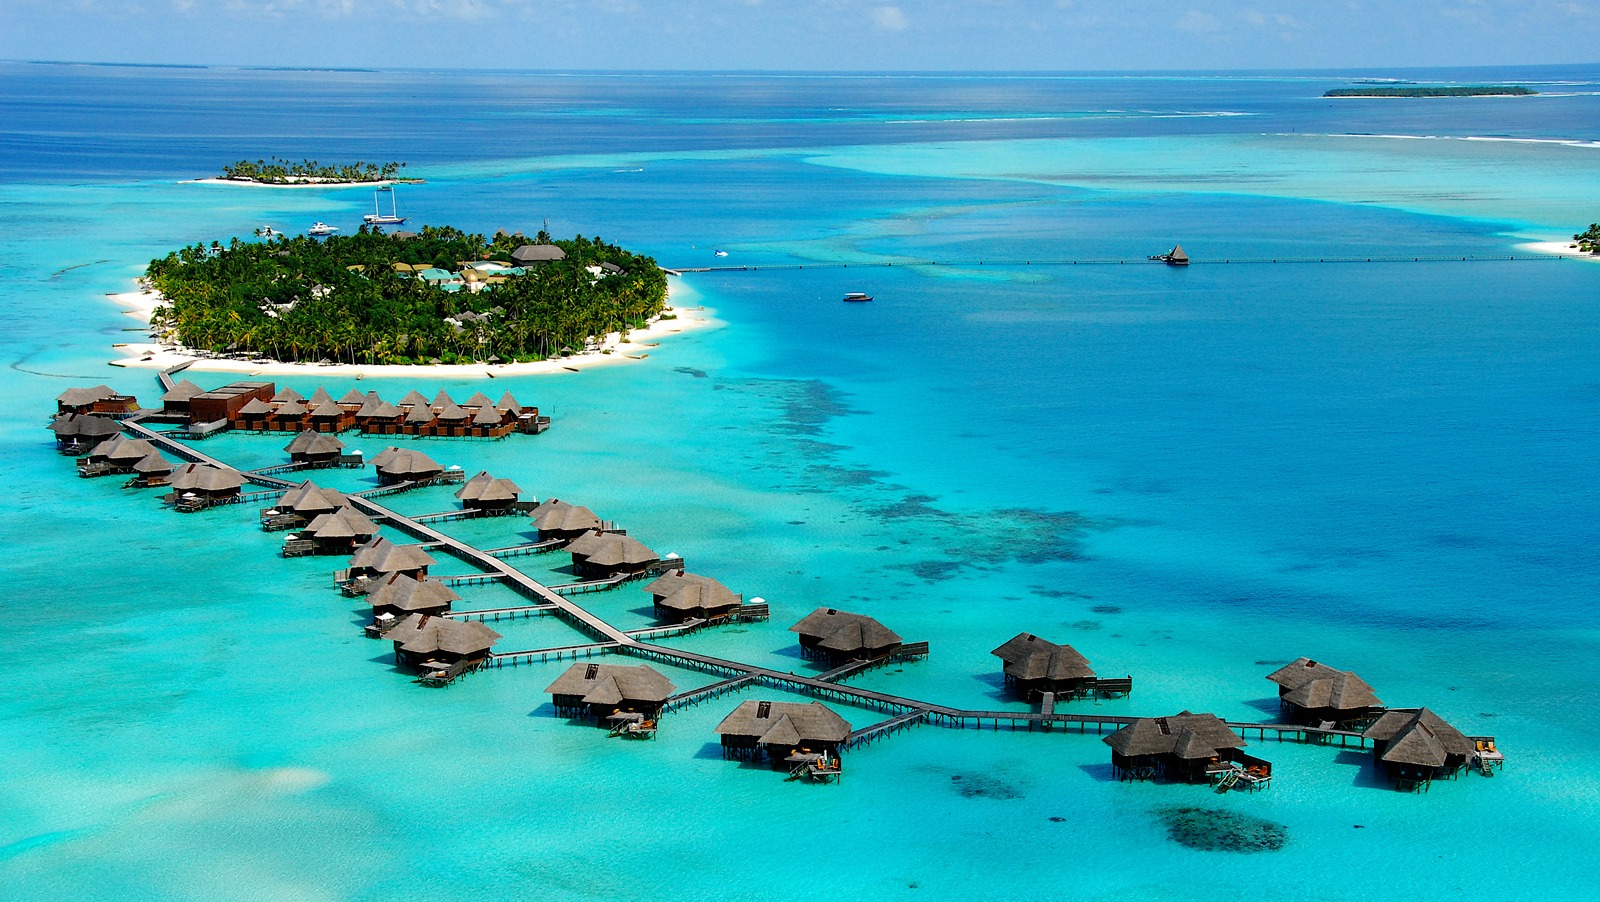 maldives places to visit images